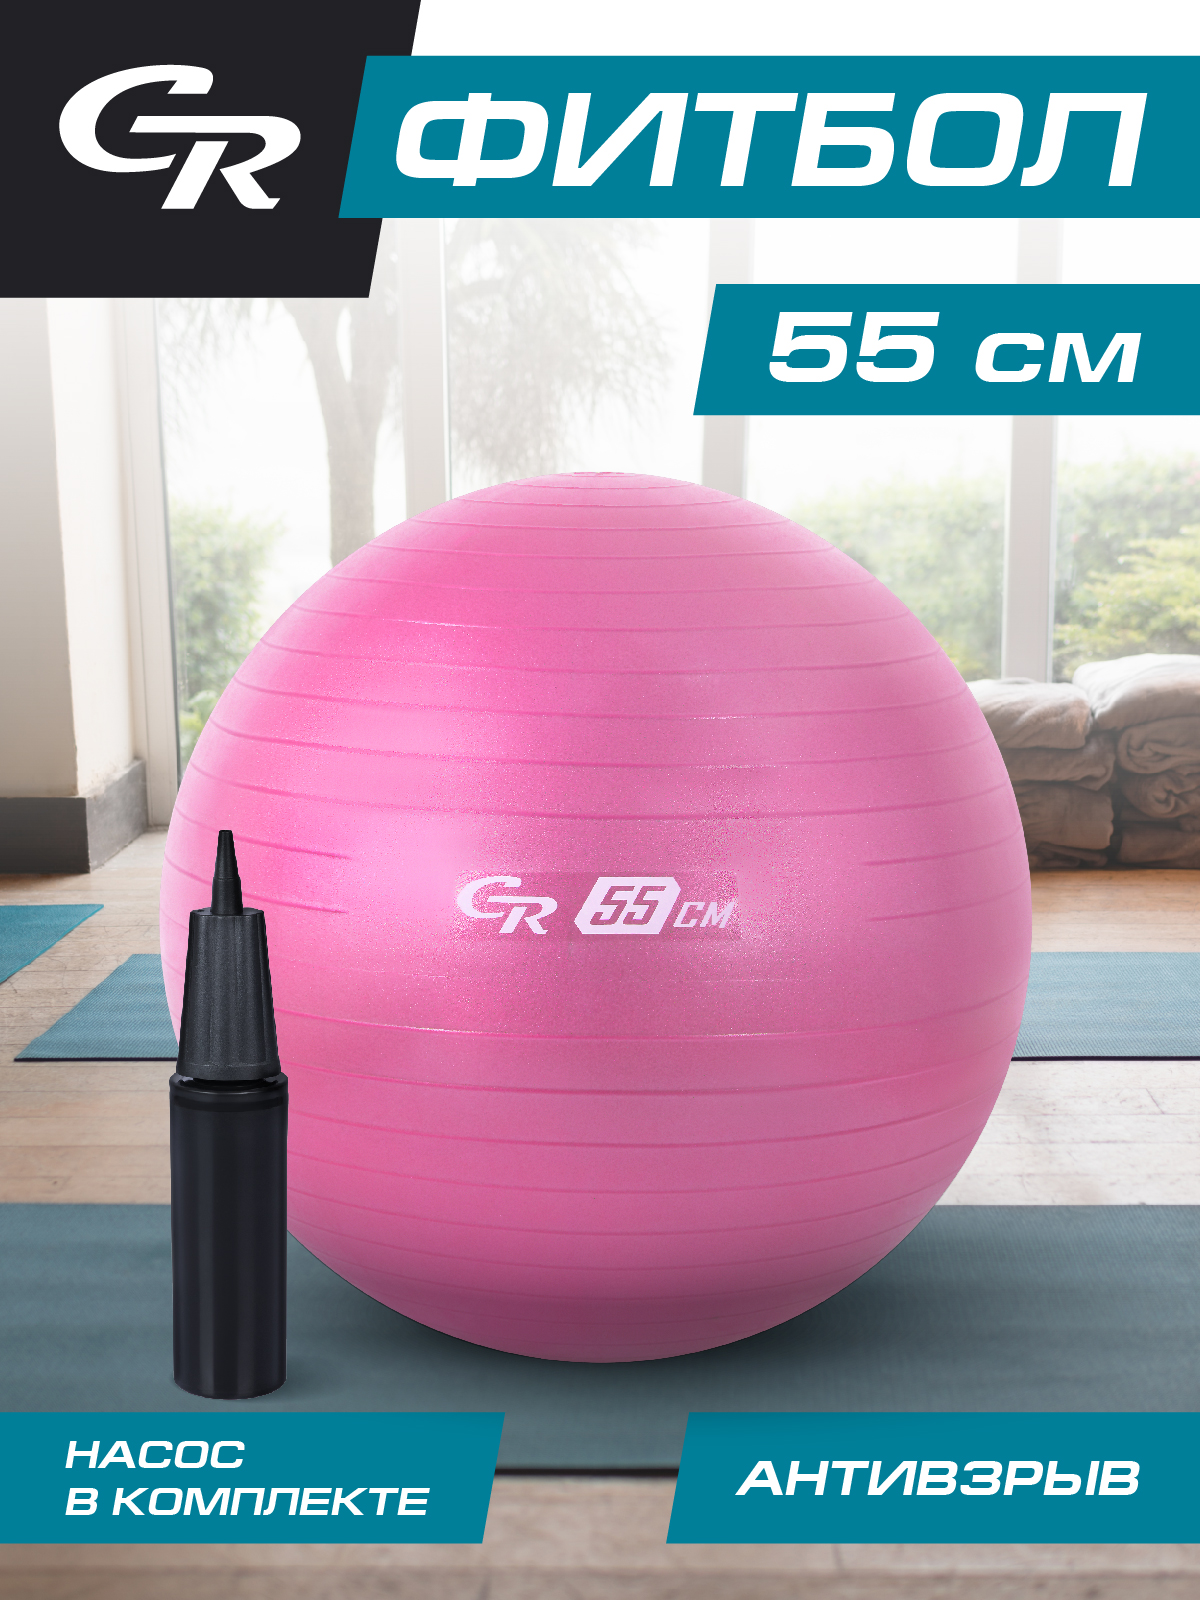 Мяч гимнастический ТМ City Ride, фитбол, антивзрыв, диаметр 55 см, ПВХ, в сумке, JB0211052